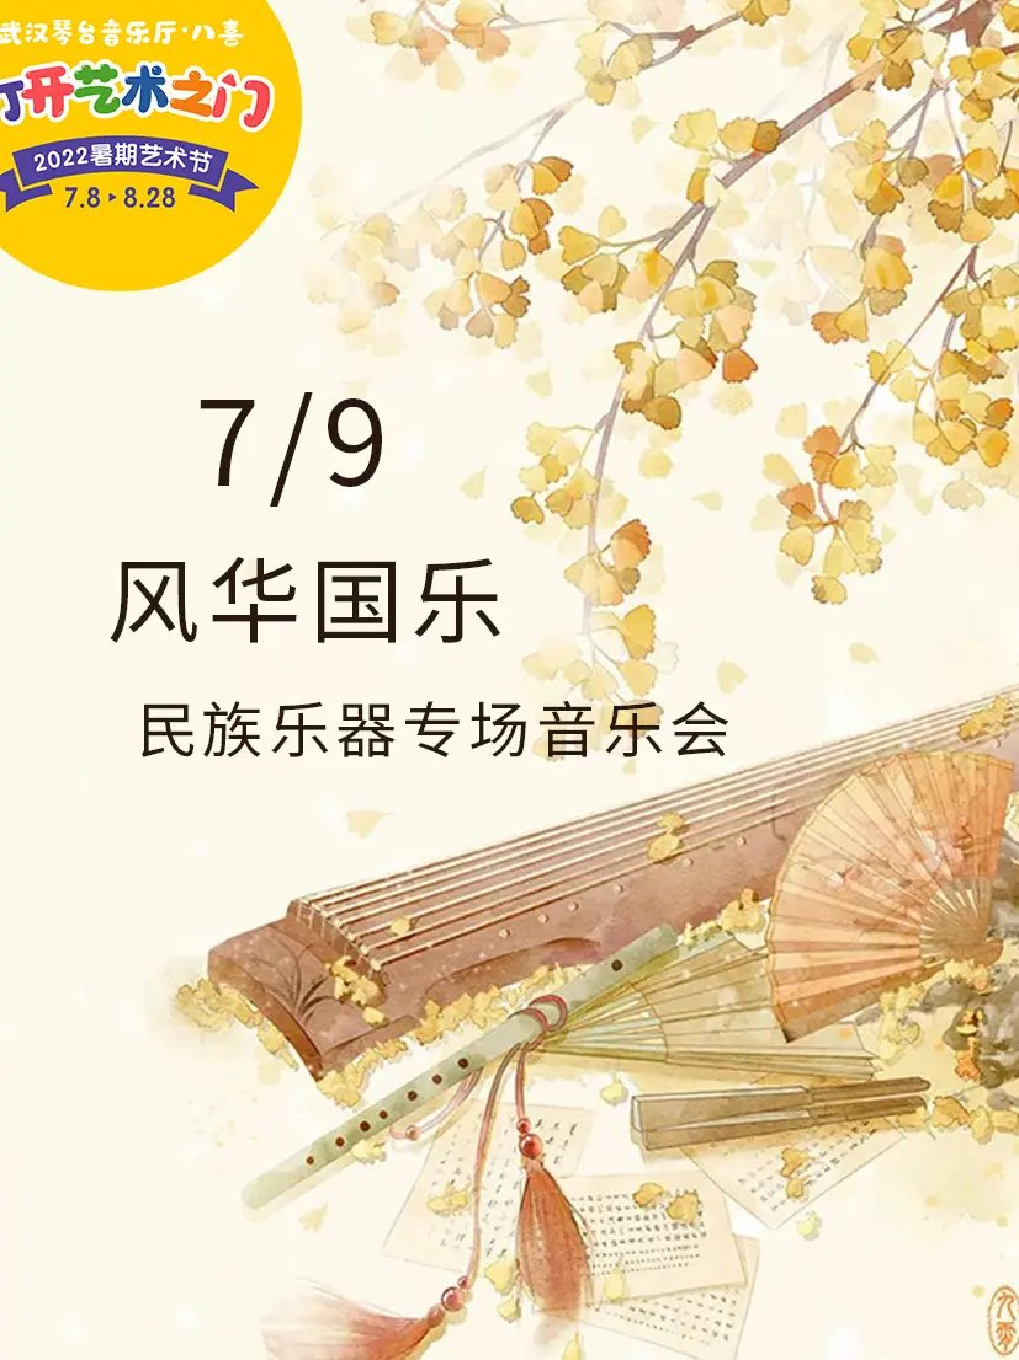 【武汉】八喜·打开艺术之门—2022暑期艺术节：风华国乐—民族乐器专场音乐会